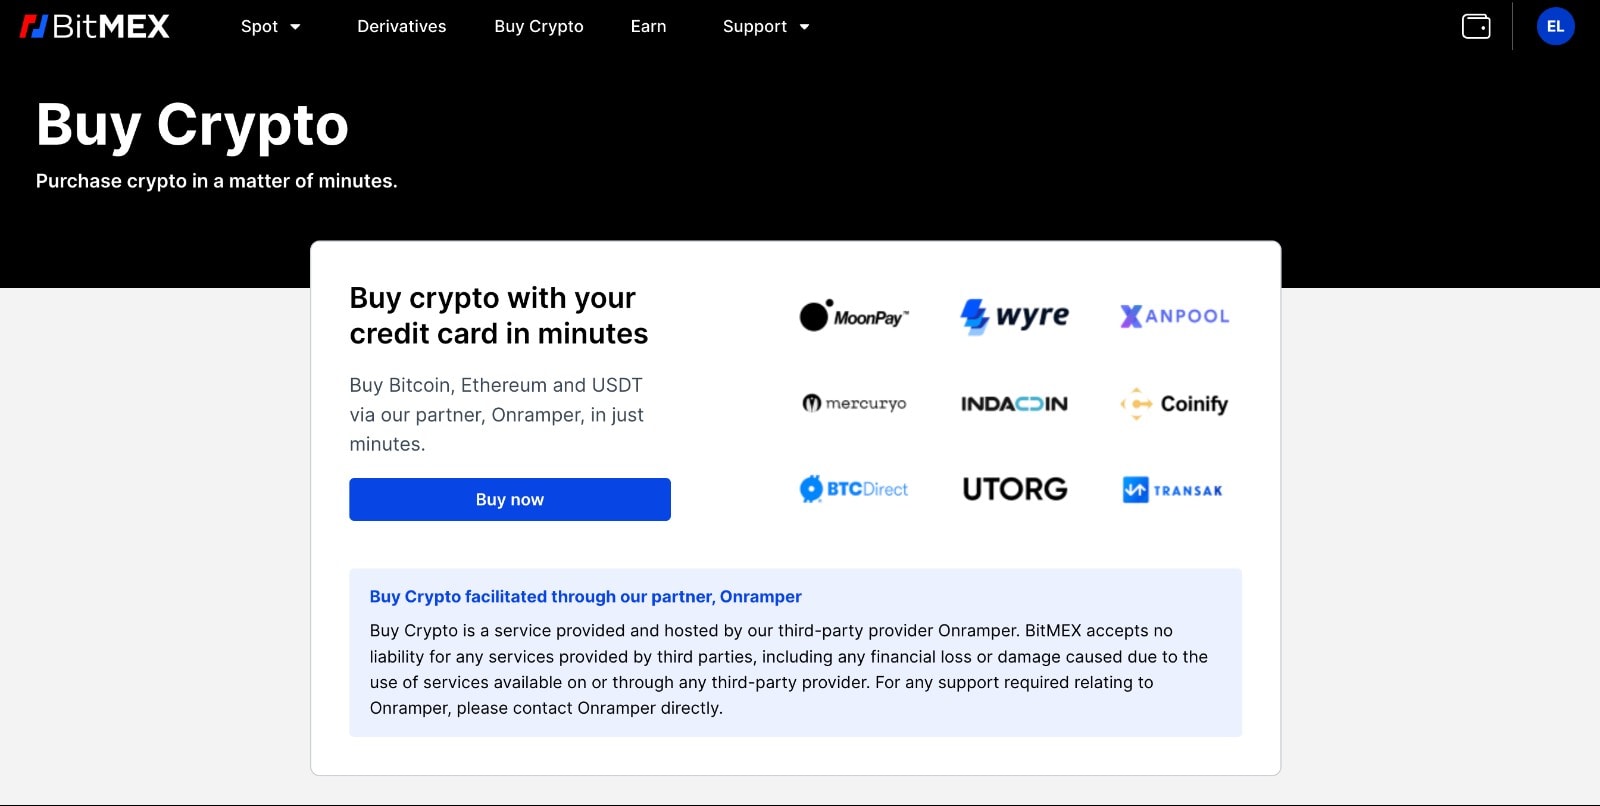 Buy Crypto partner BitMEX